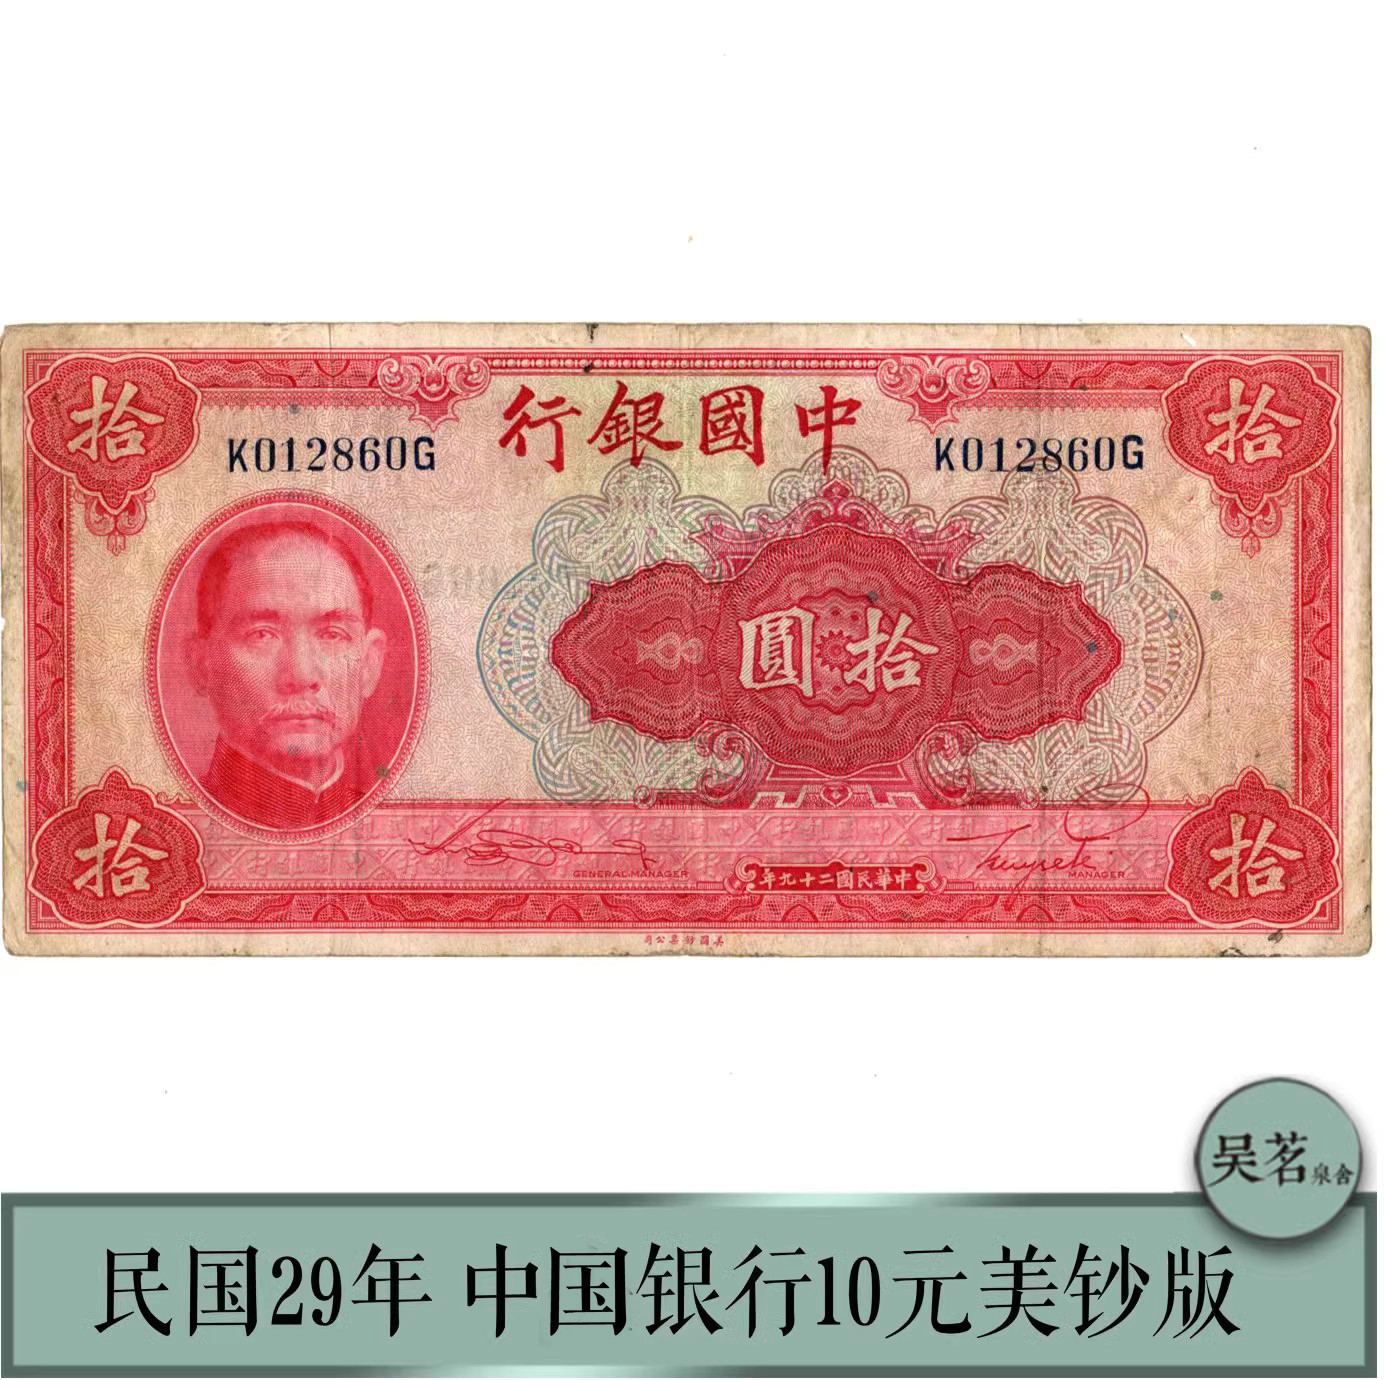 保粹评级58/60民国29年纸币中国银行十元孙中山美钞版保真包邮-Taobao